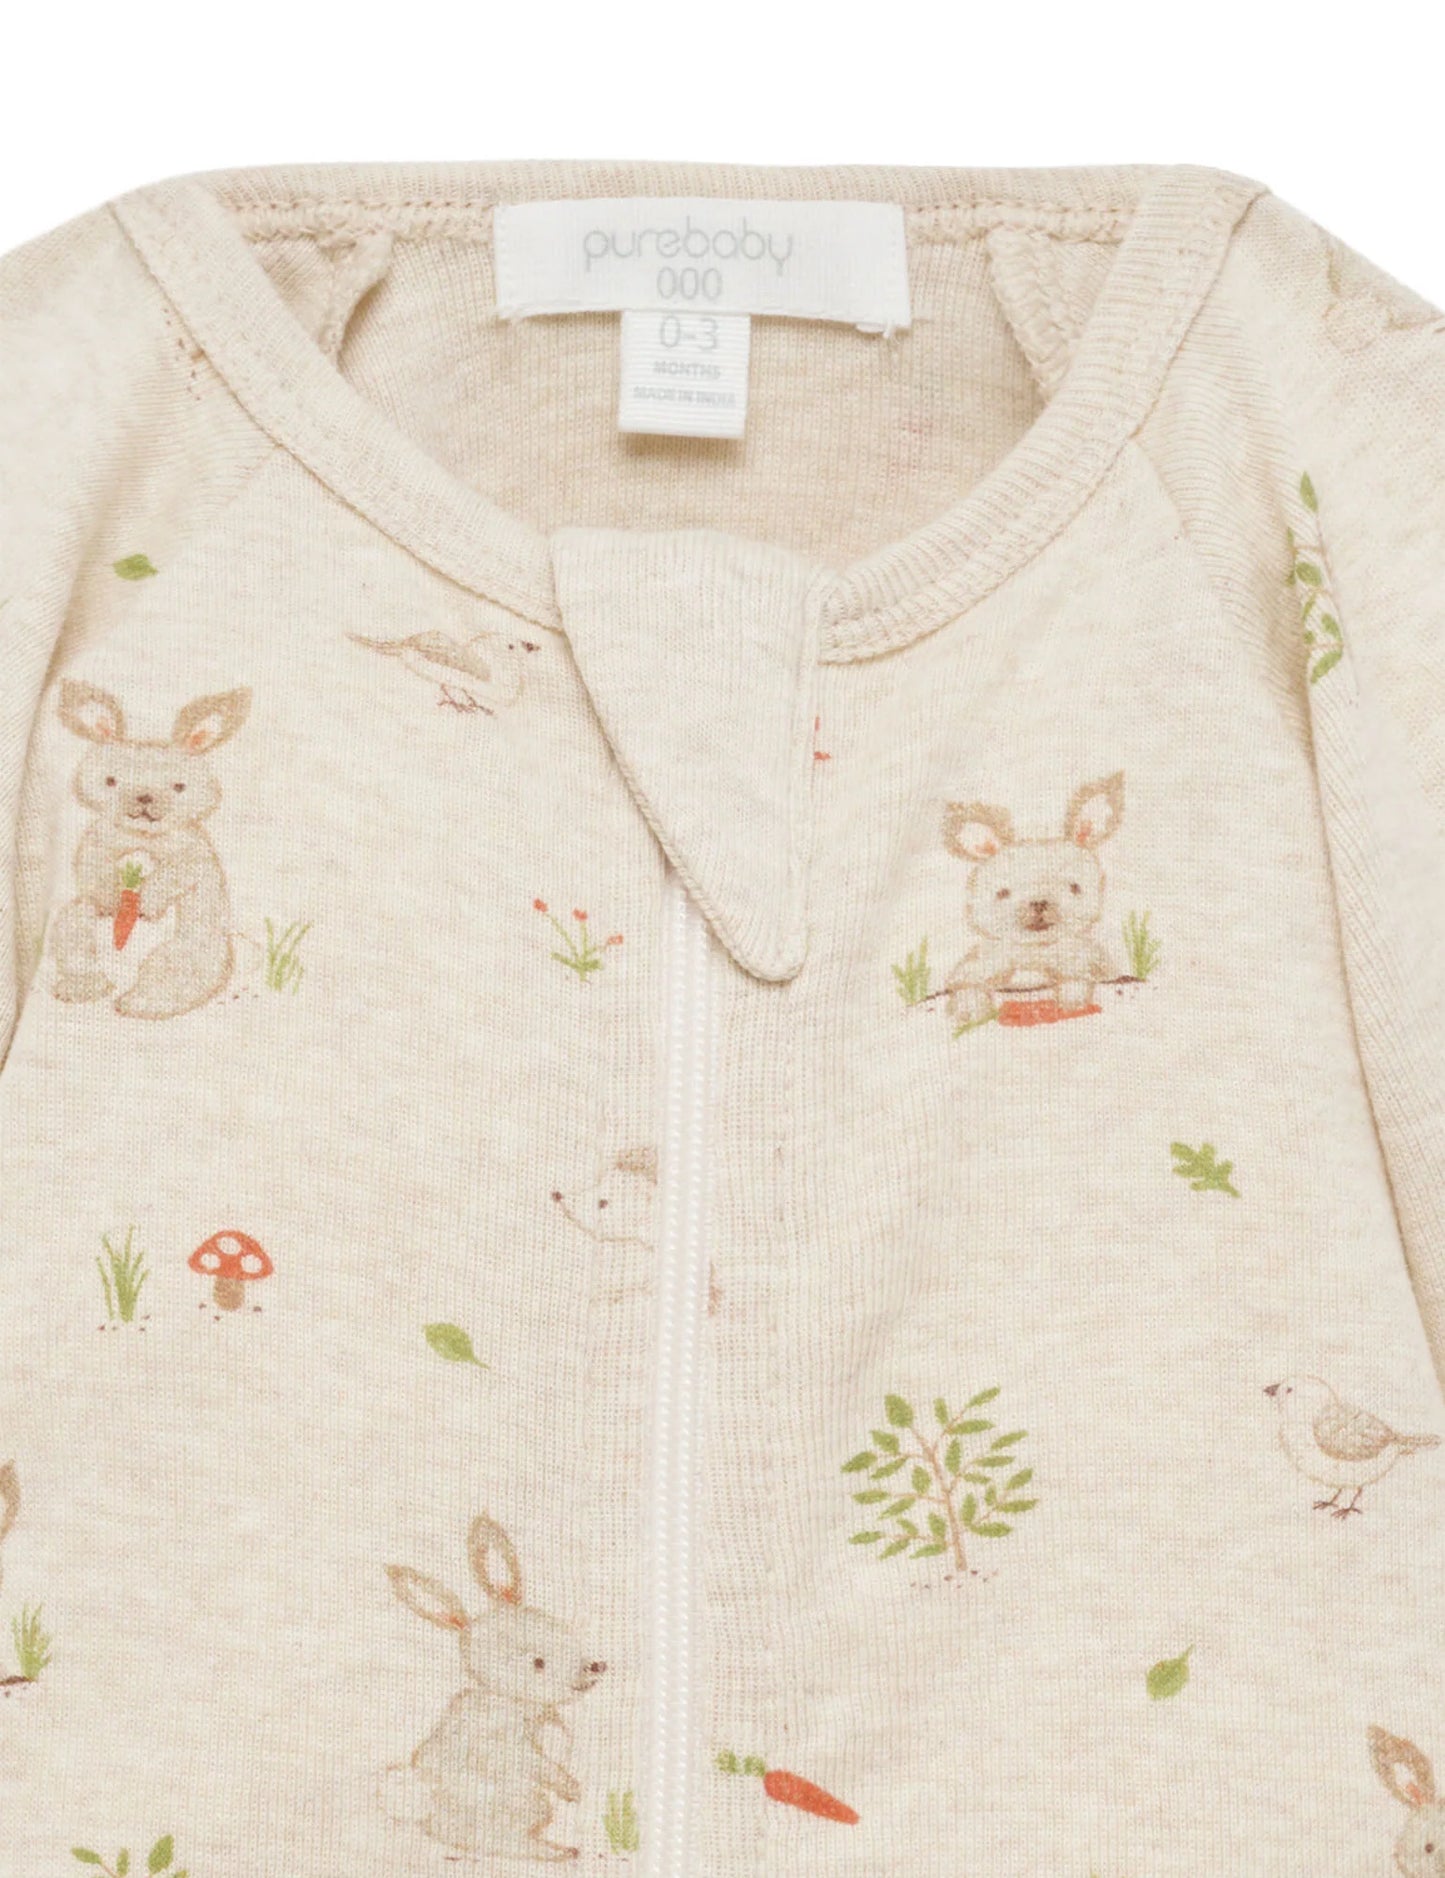 Purebaby - Bunny Zip Growsuit